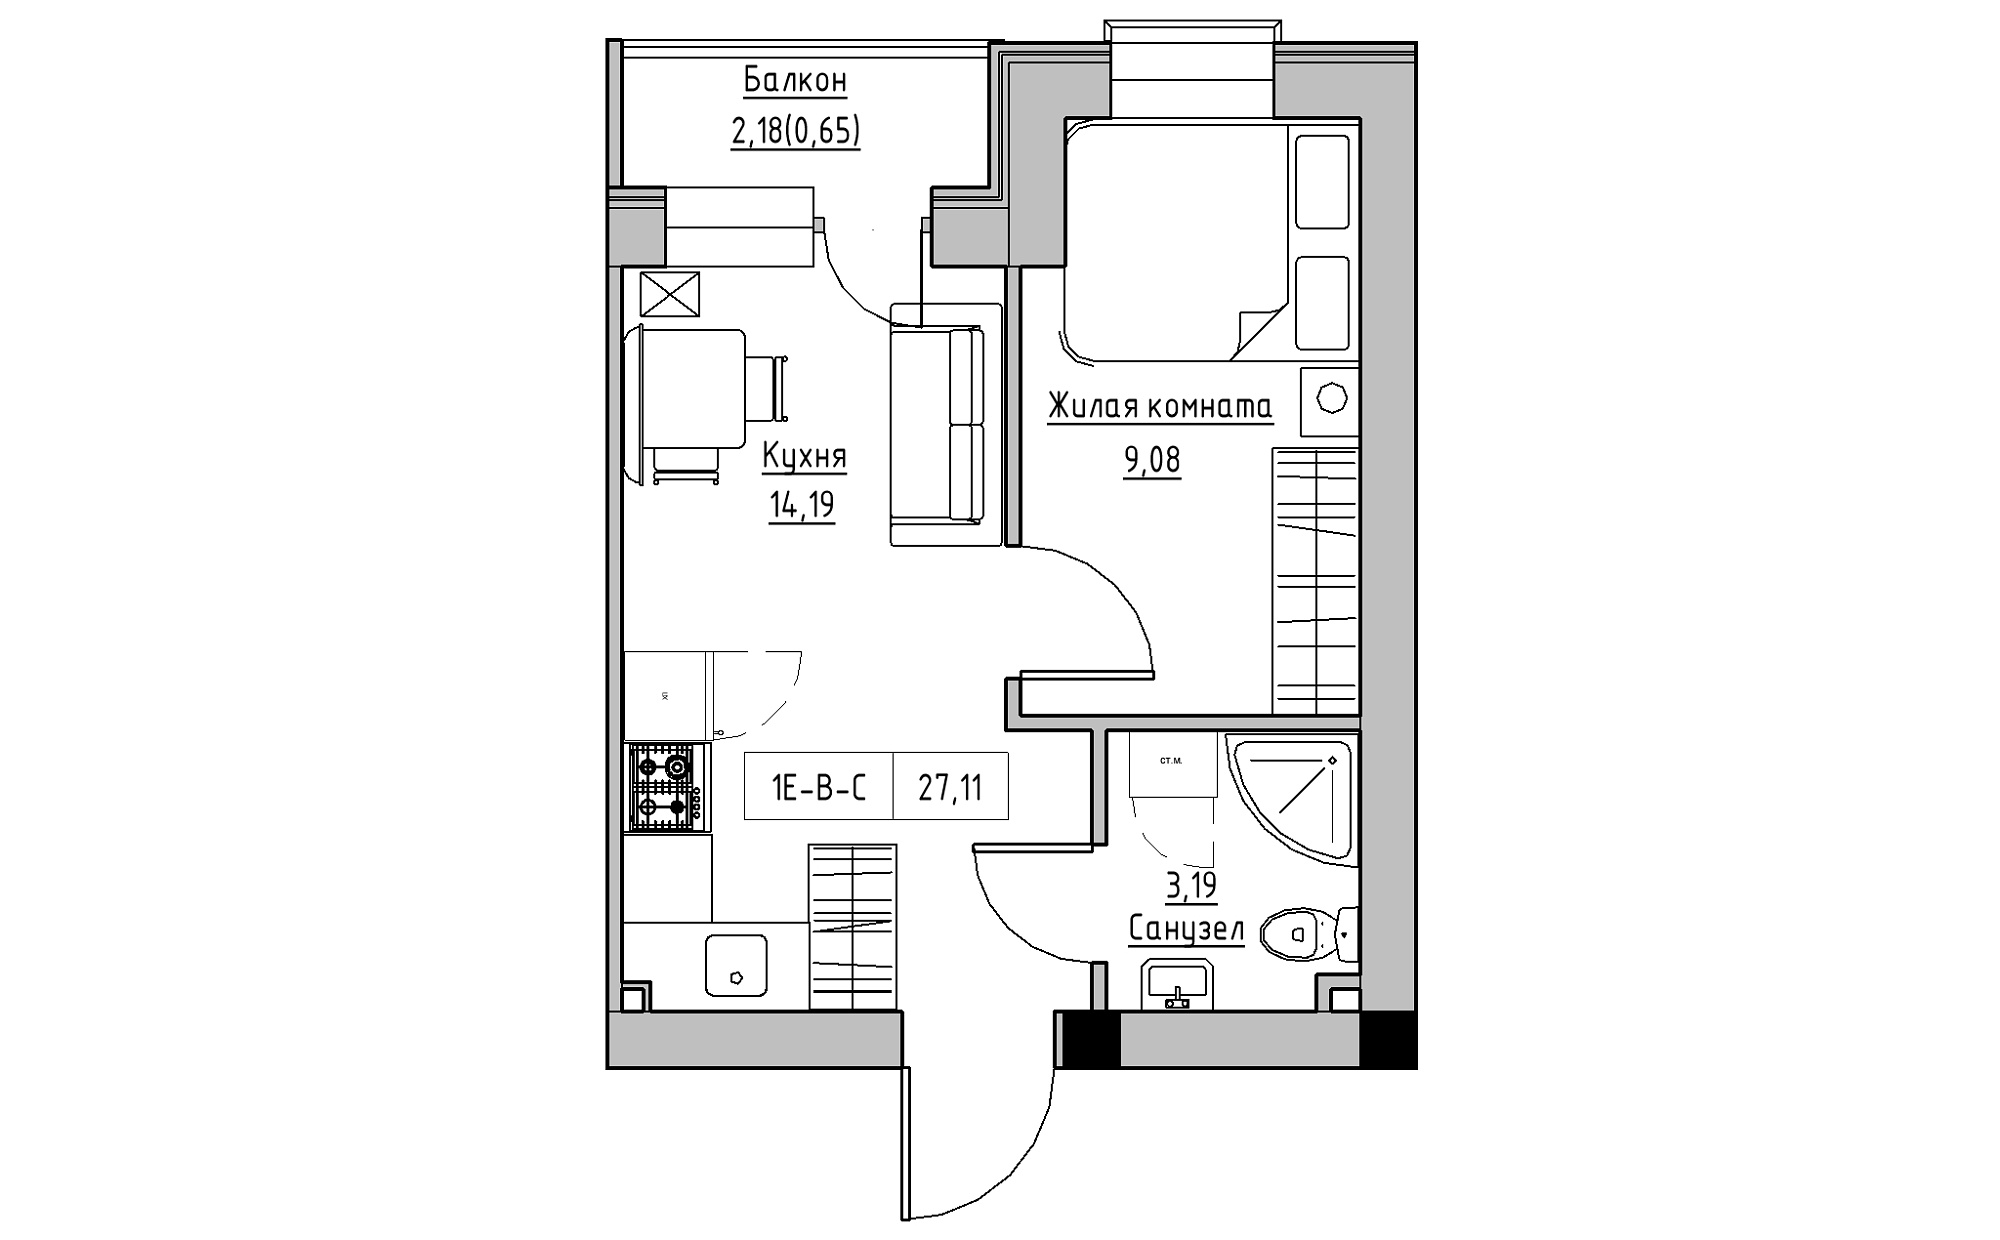 Планування 1-к квартира площею 27.11м2, KS-022-05/0008.